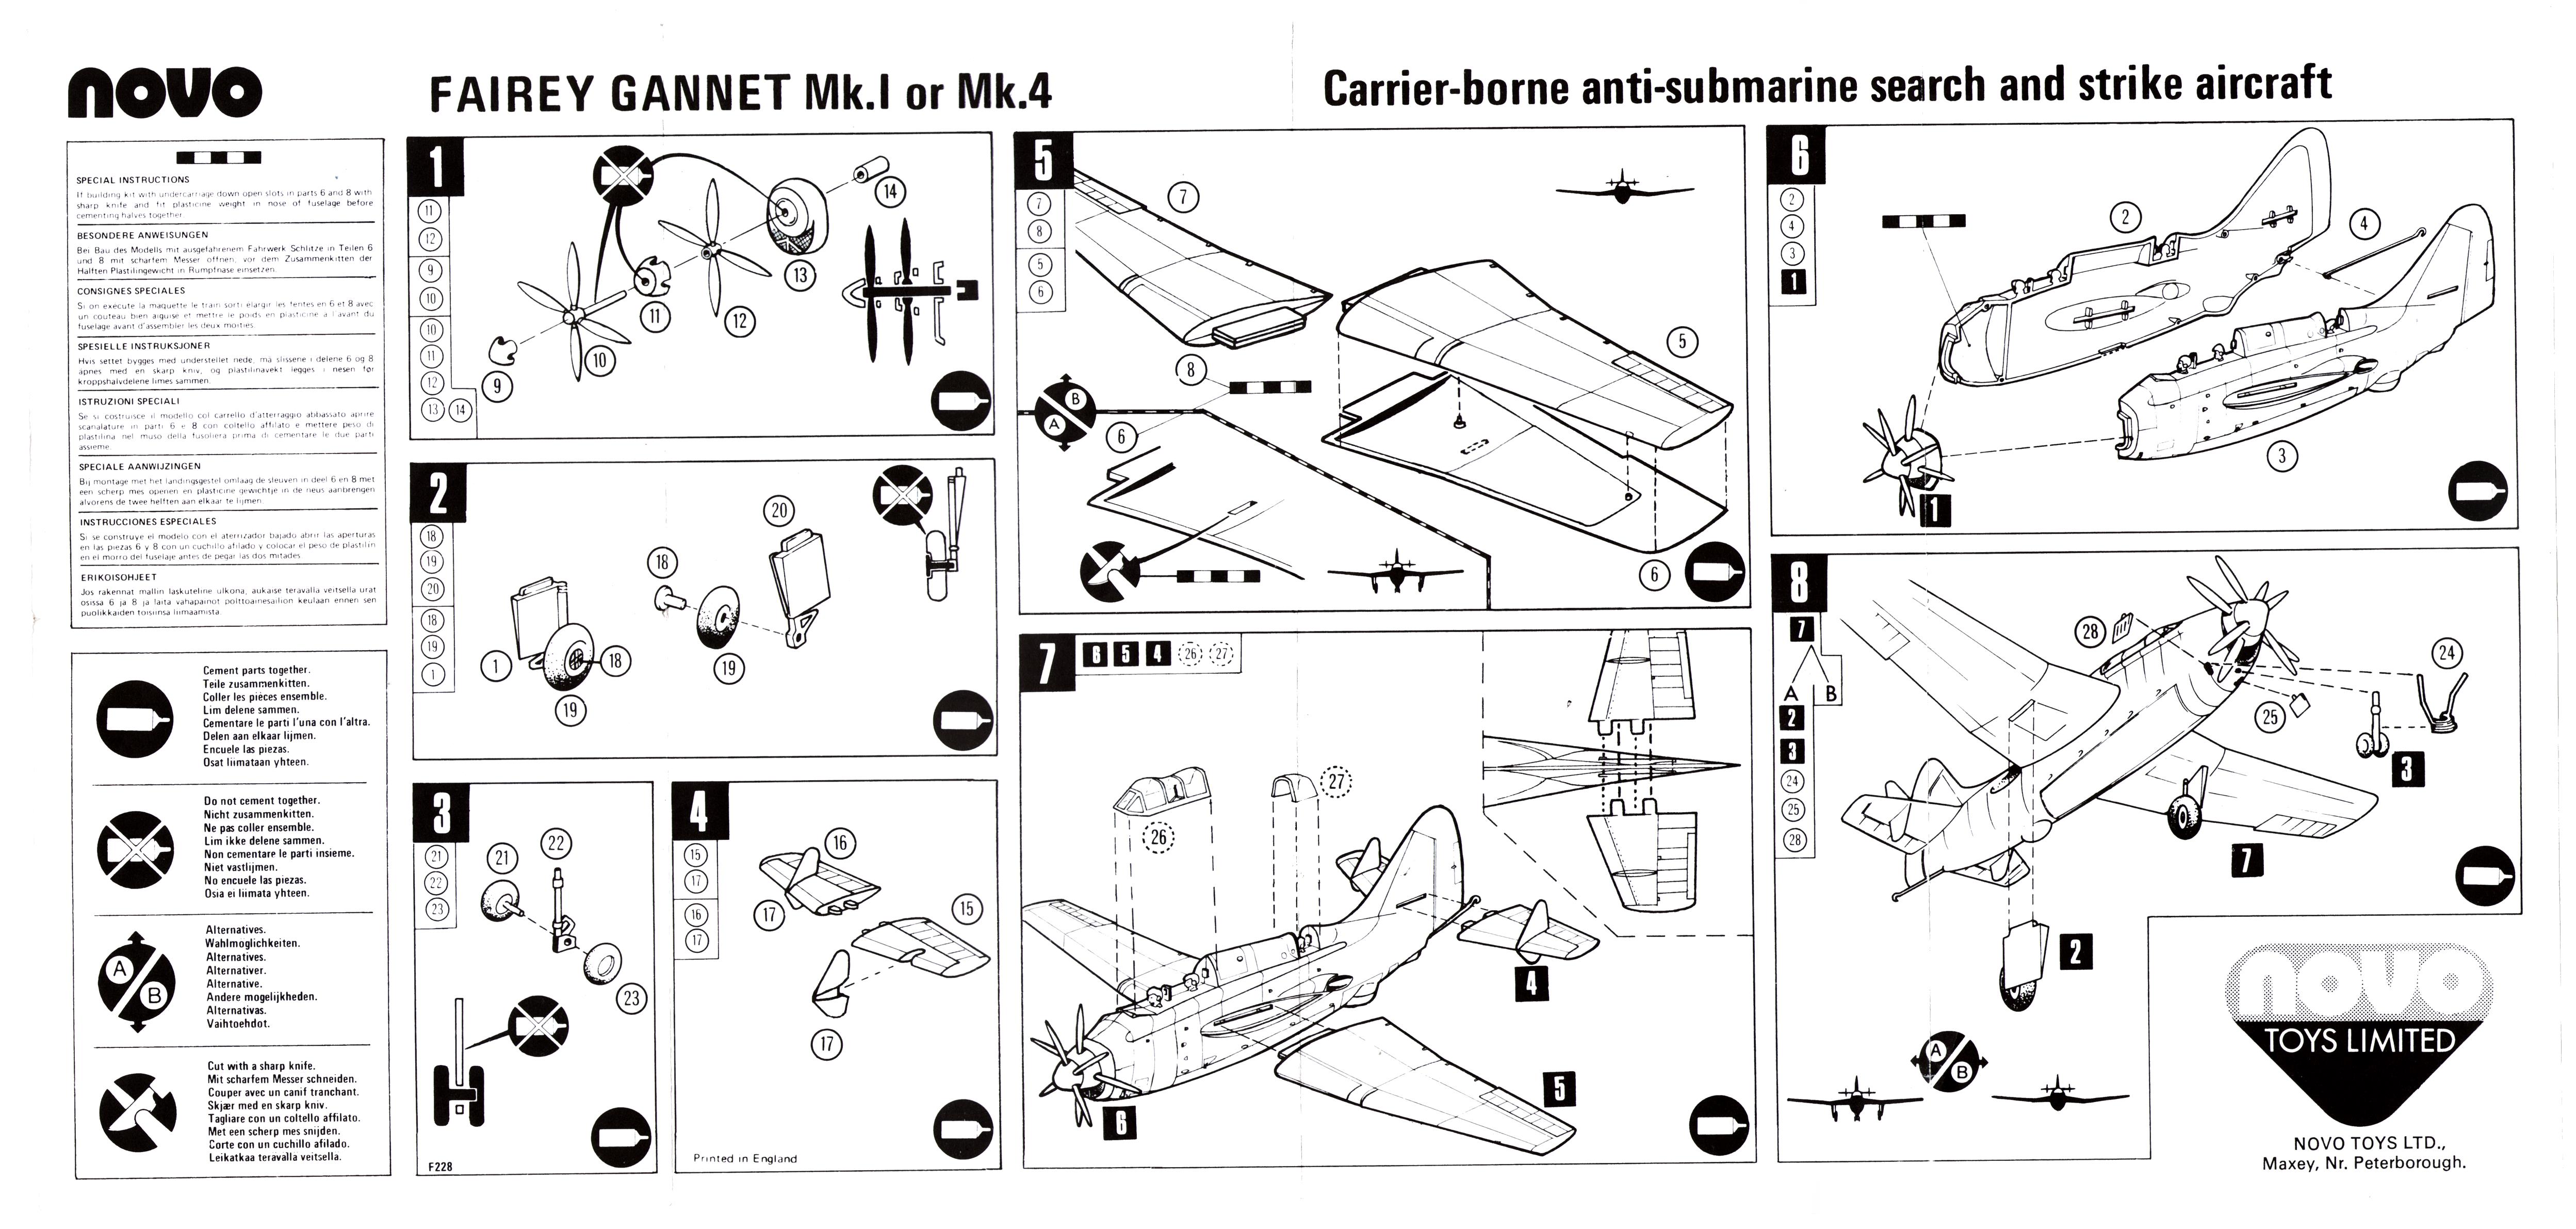 Инструкция пошаговой сборки NOVO F228 Fairey Gannet